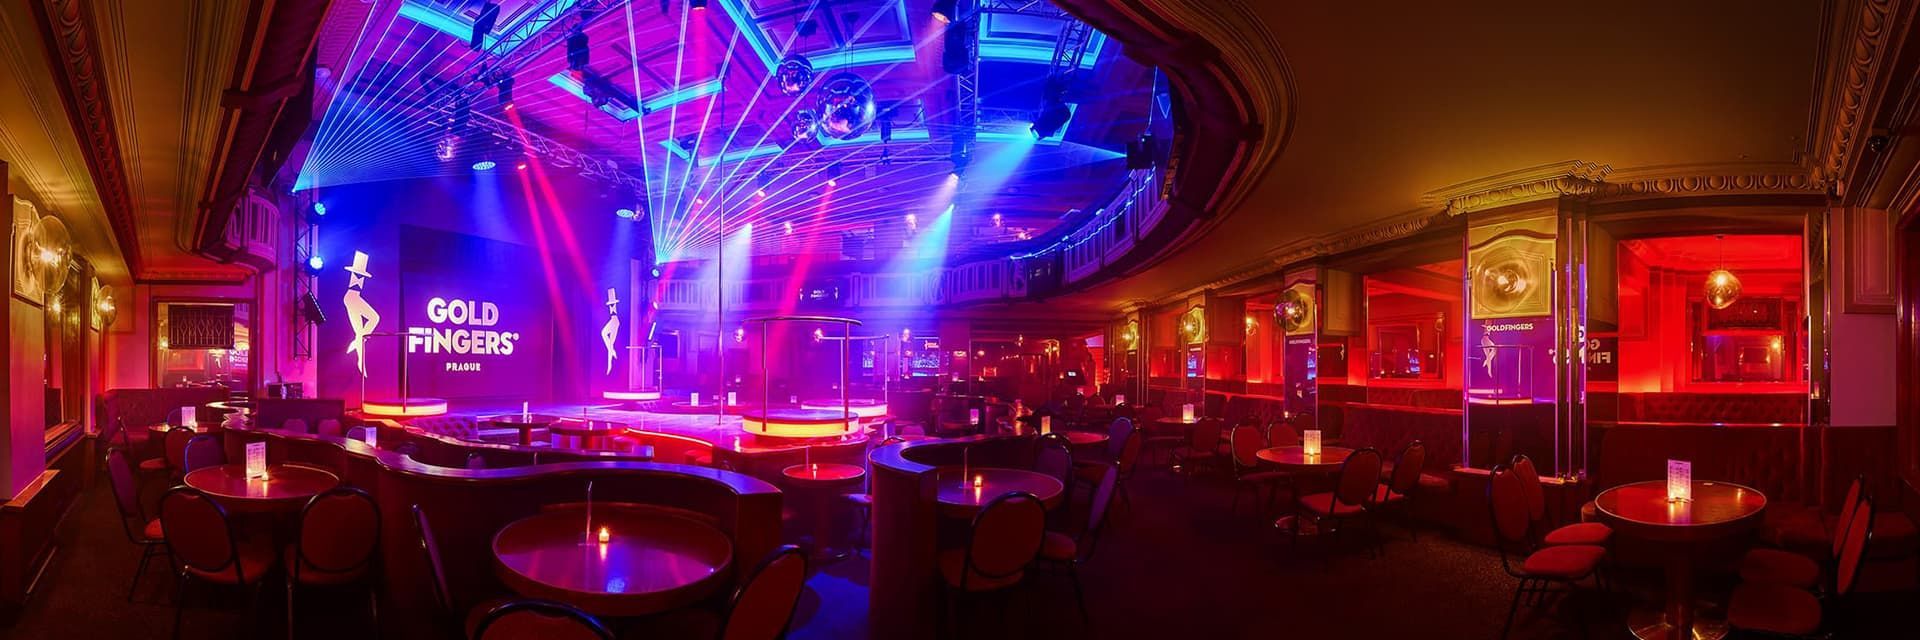 The best strip club in Prague interior